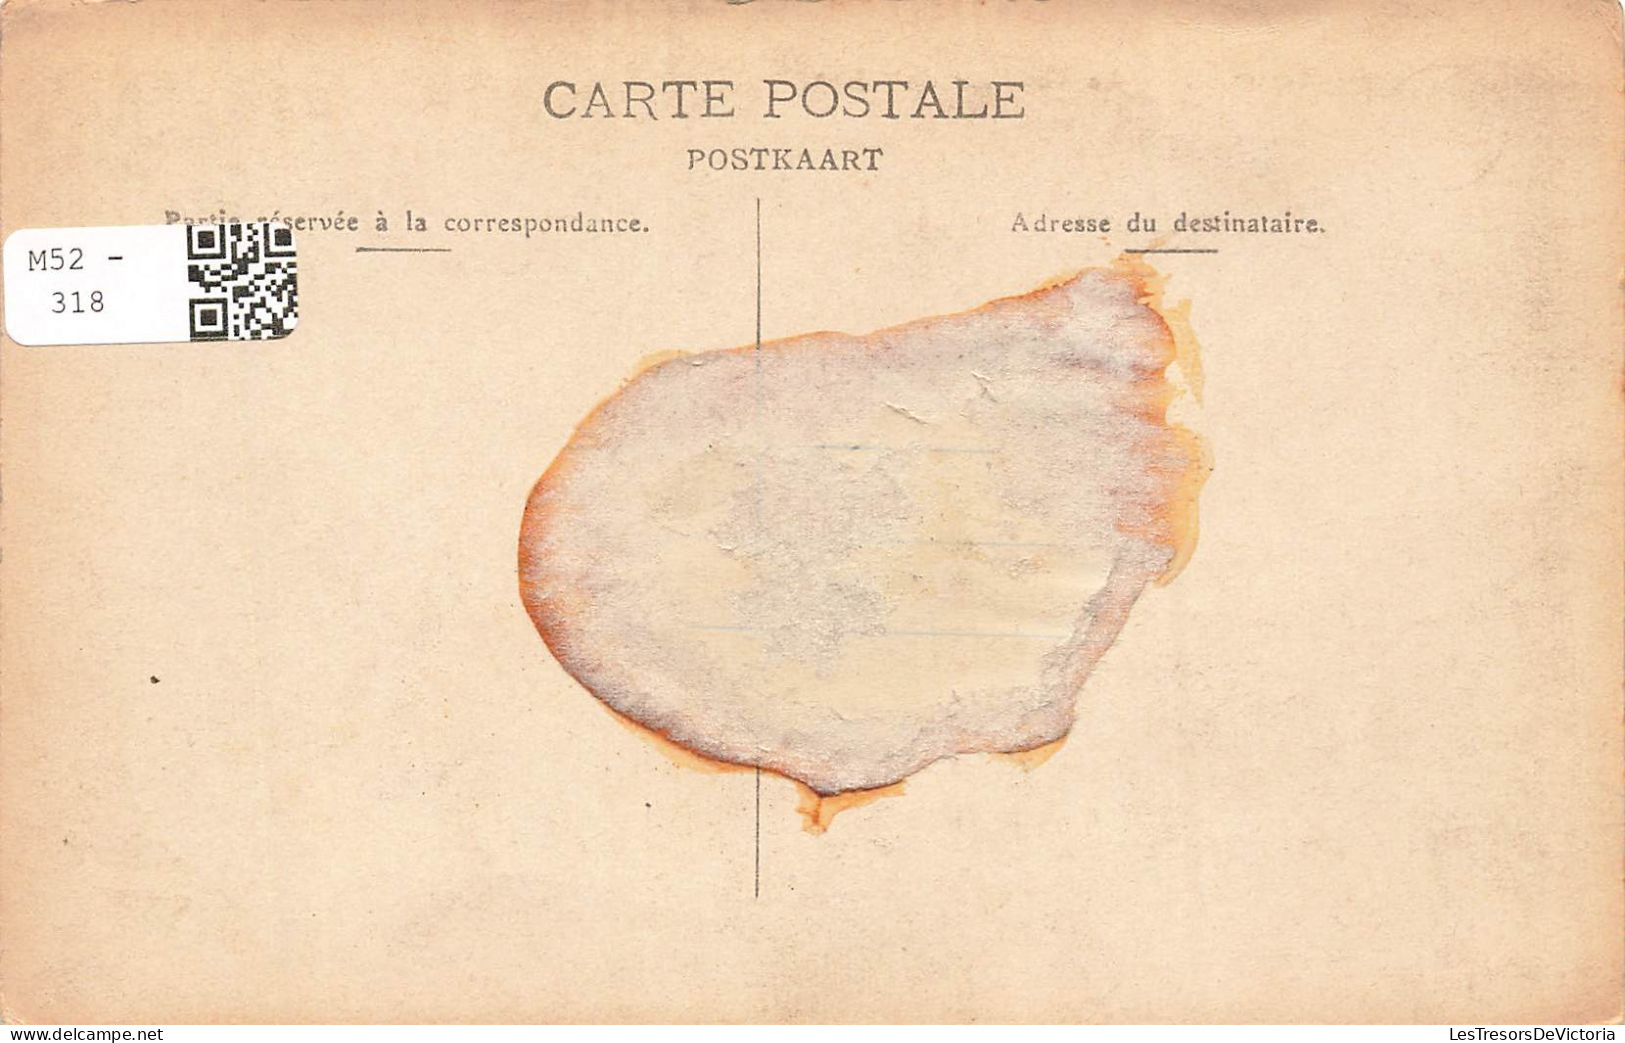 BELGIQUE - Botassart - Le Tombeau Du Géant - Carte Postale Ancienne - Other & Unclassified